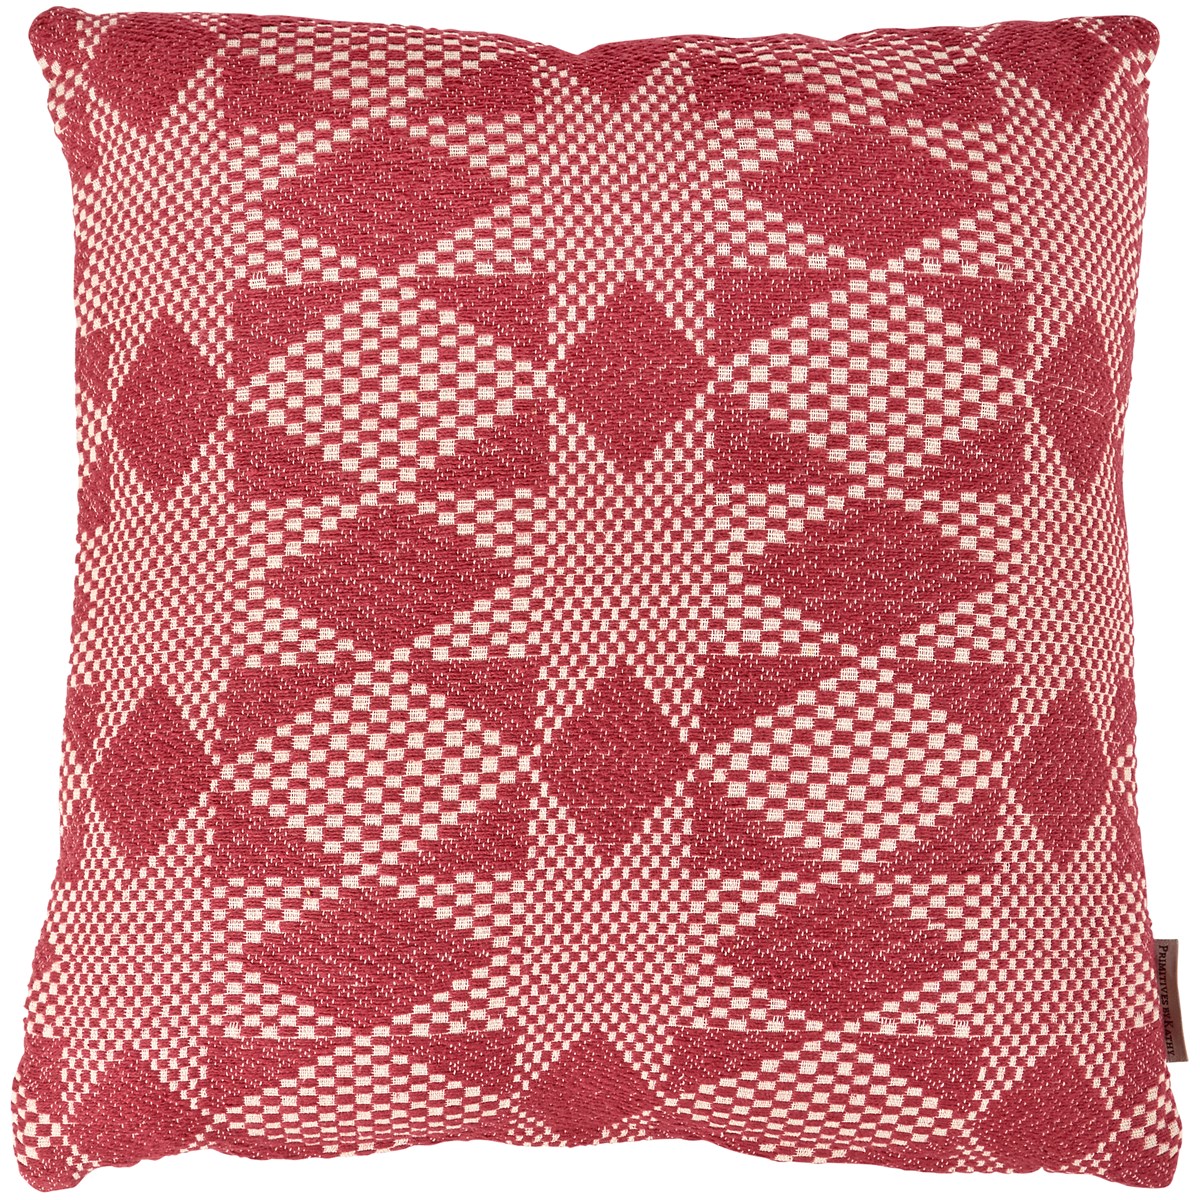 Red Double Star Pillow - Cotton, Zipper